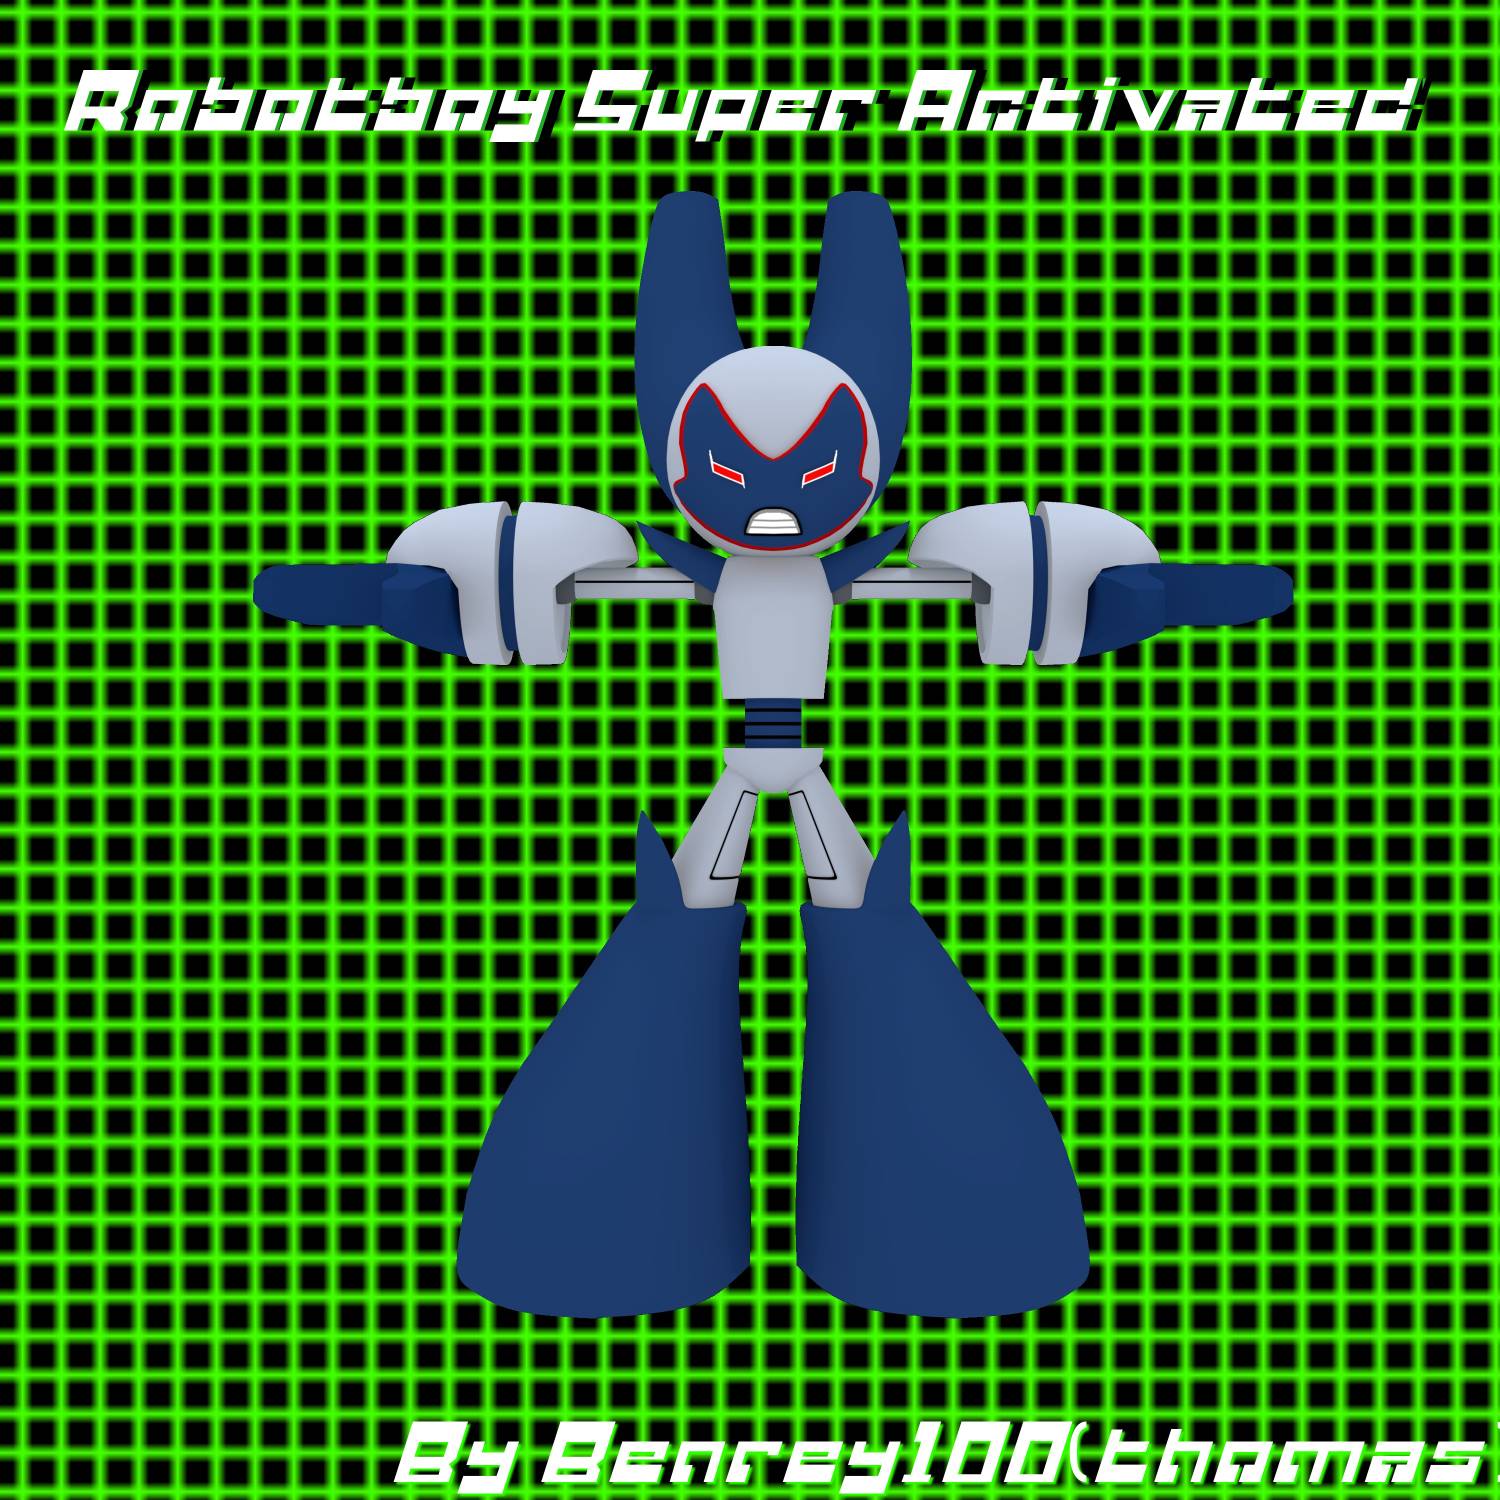 Robotboy - Tommy Turnbull by thomas1158 on DeviantArt